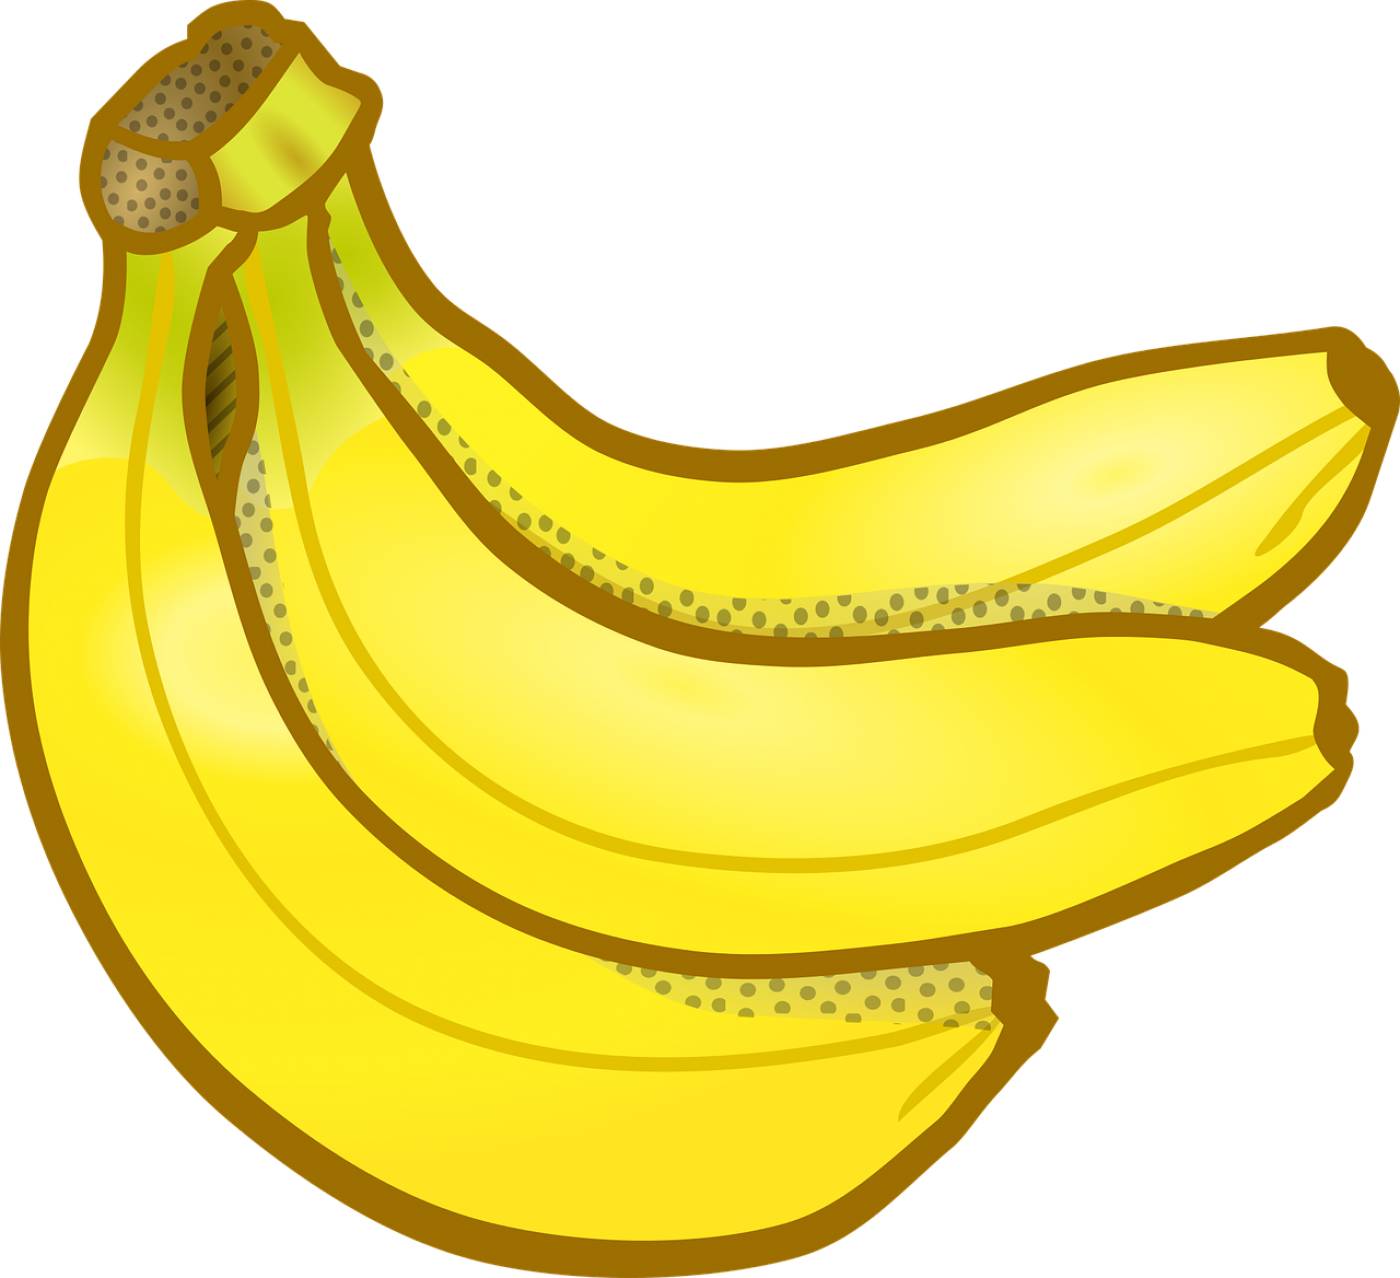 banana bunch education fruits  svg vector